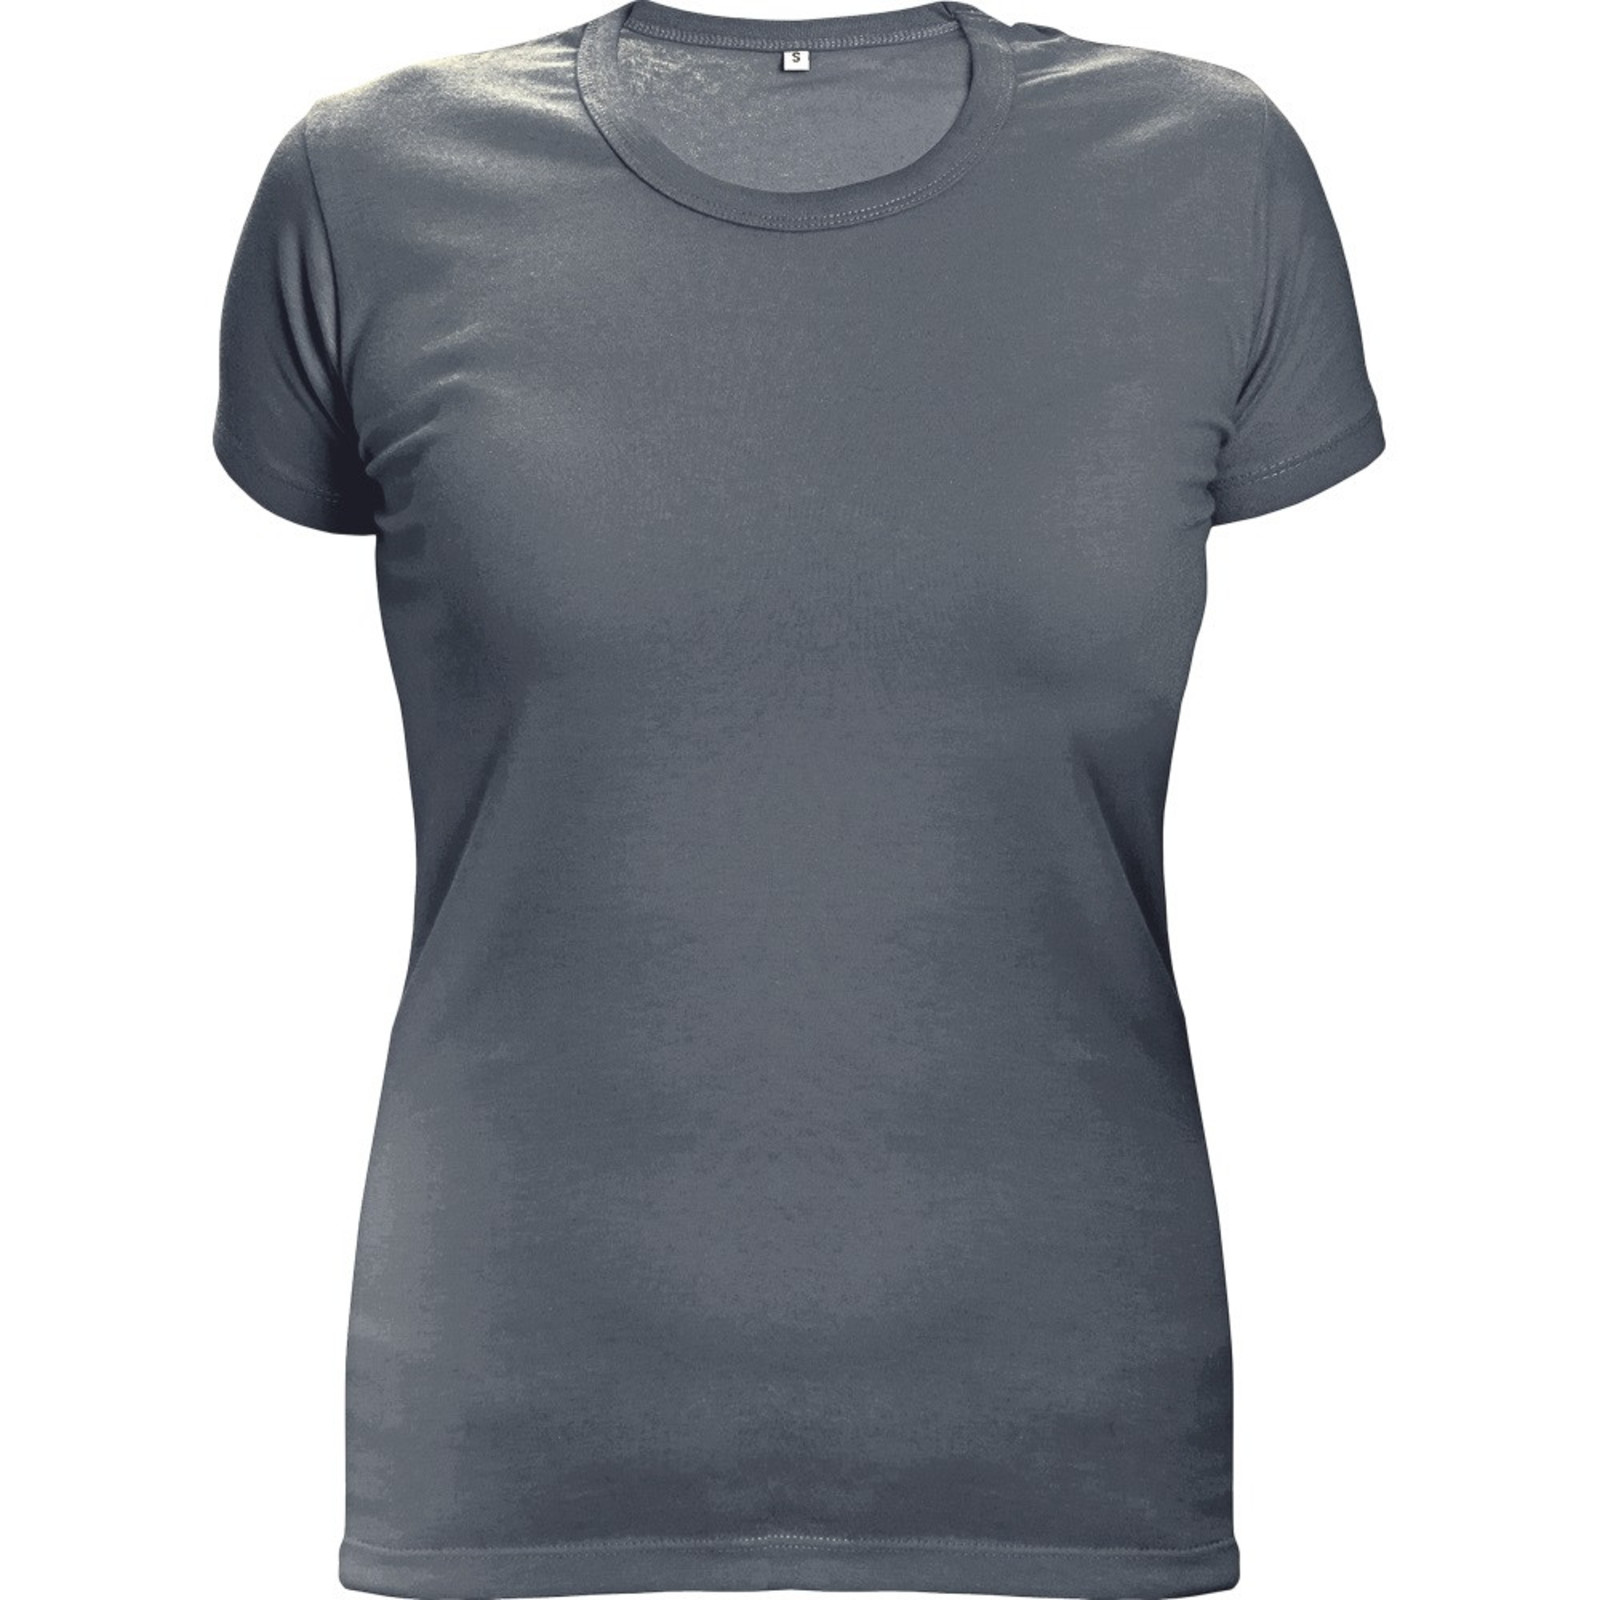 Dámske tričko s krátkym rukávom Surma Lady - veľkosť: L, farba: grafitová